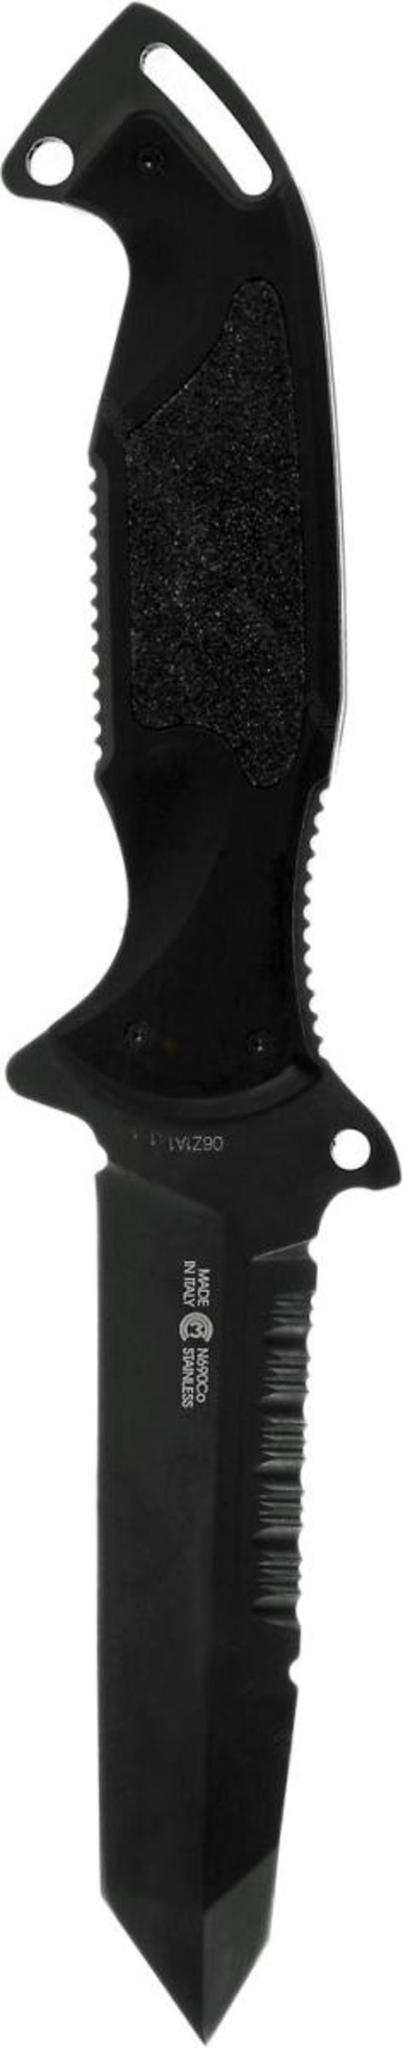 Нож с фиксированным клинком Remington Зулу I (Zulu) RM\895FT DLC